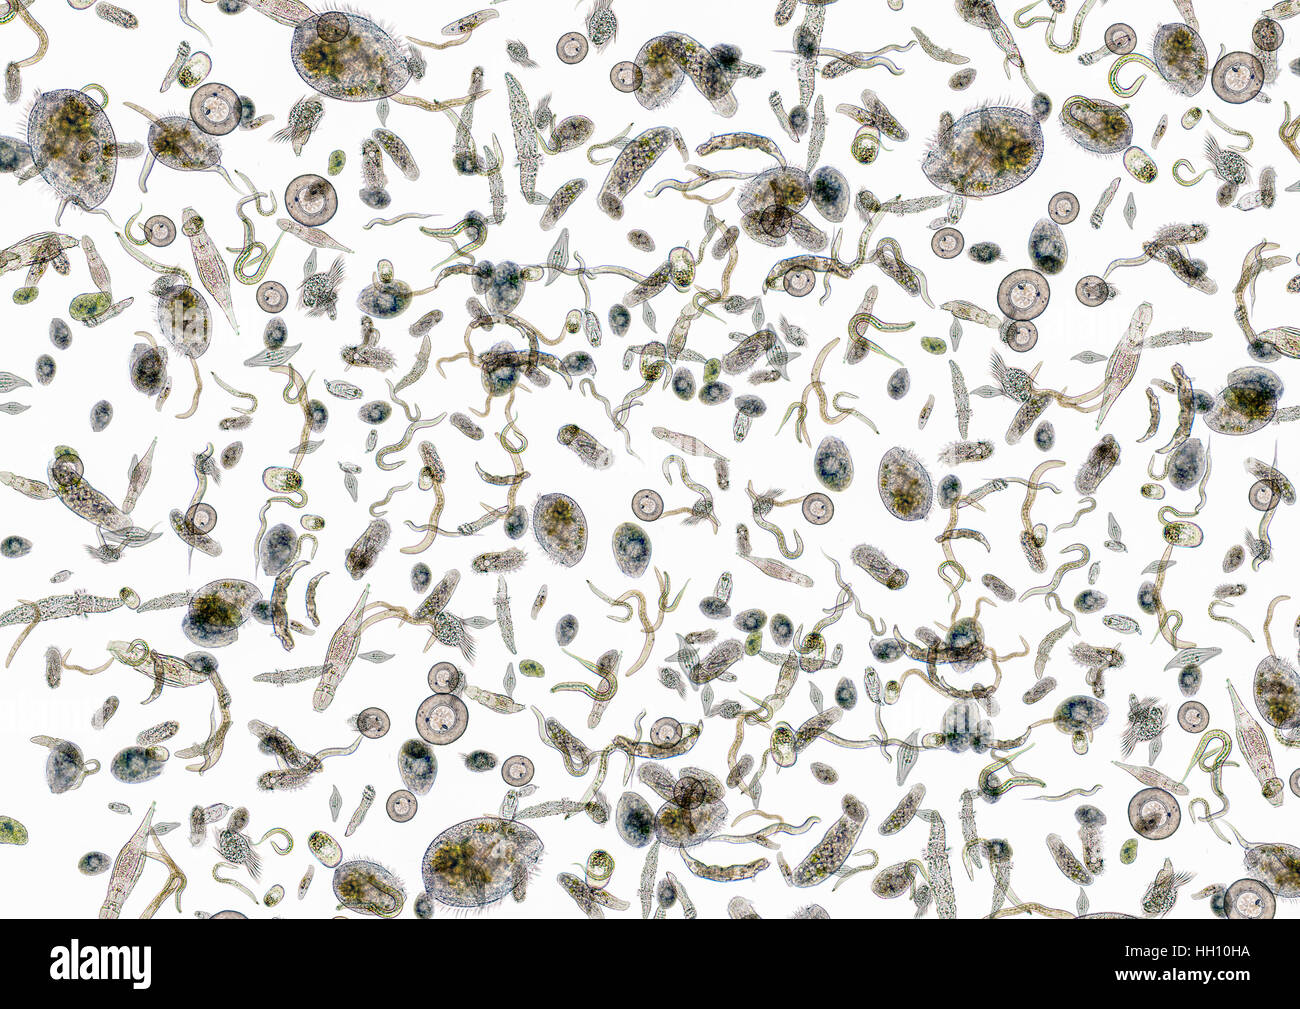 La micrografia mostra un sacco di vari microrganismi di acqua dolce in luce posteriore Foto Stock